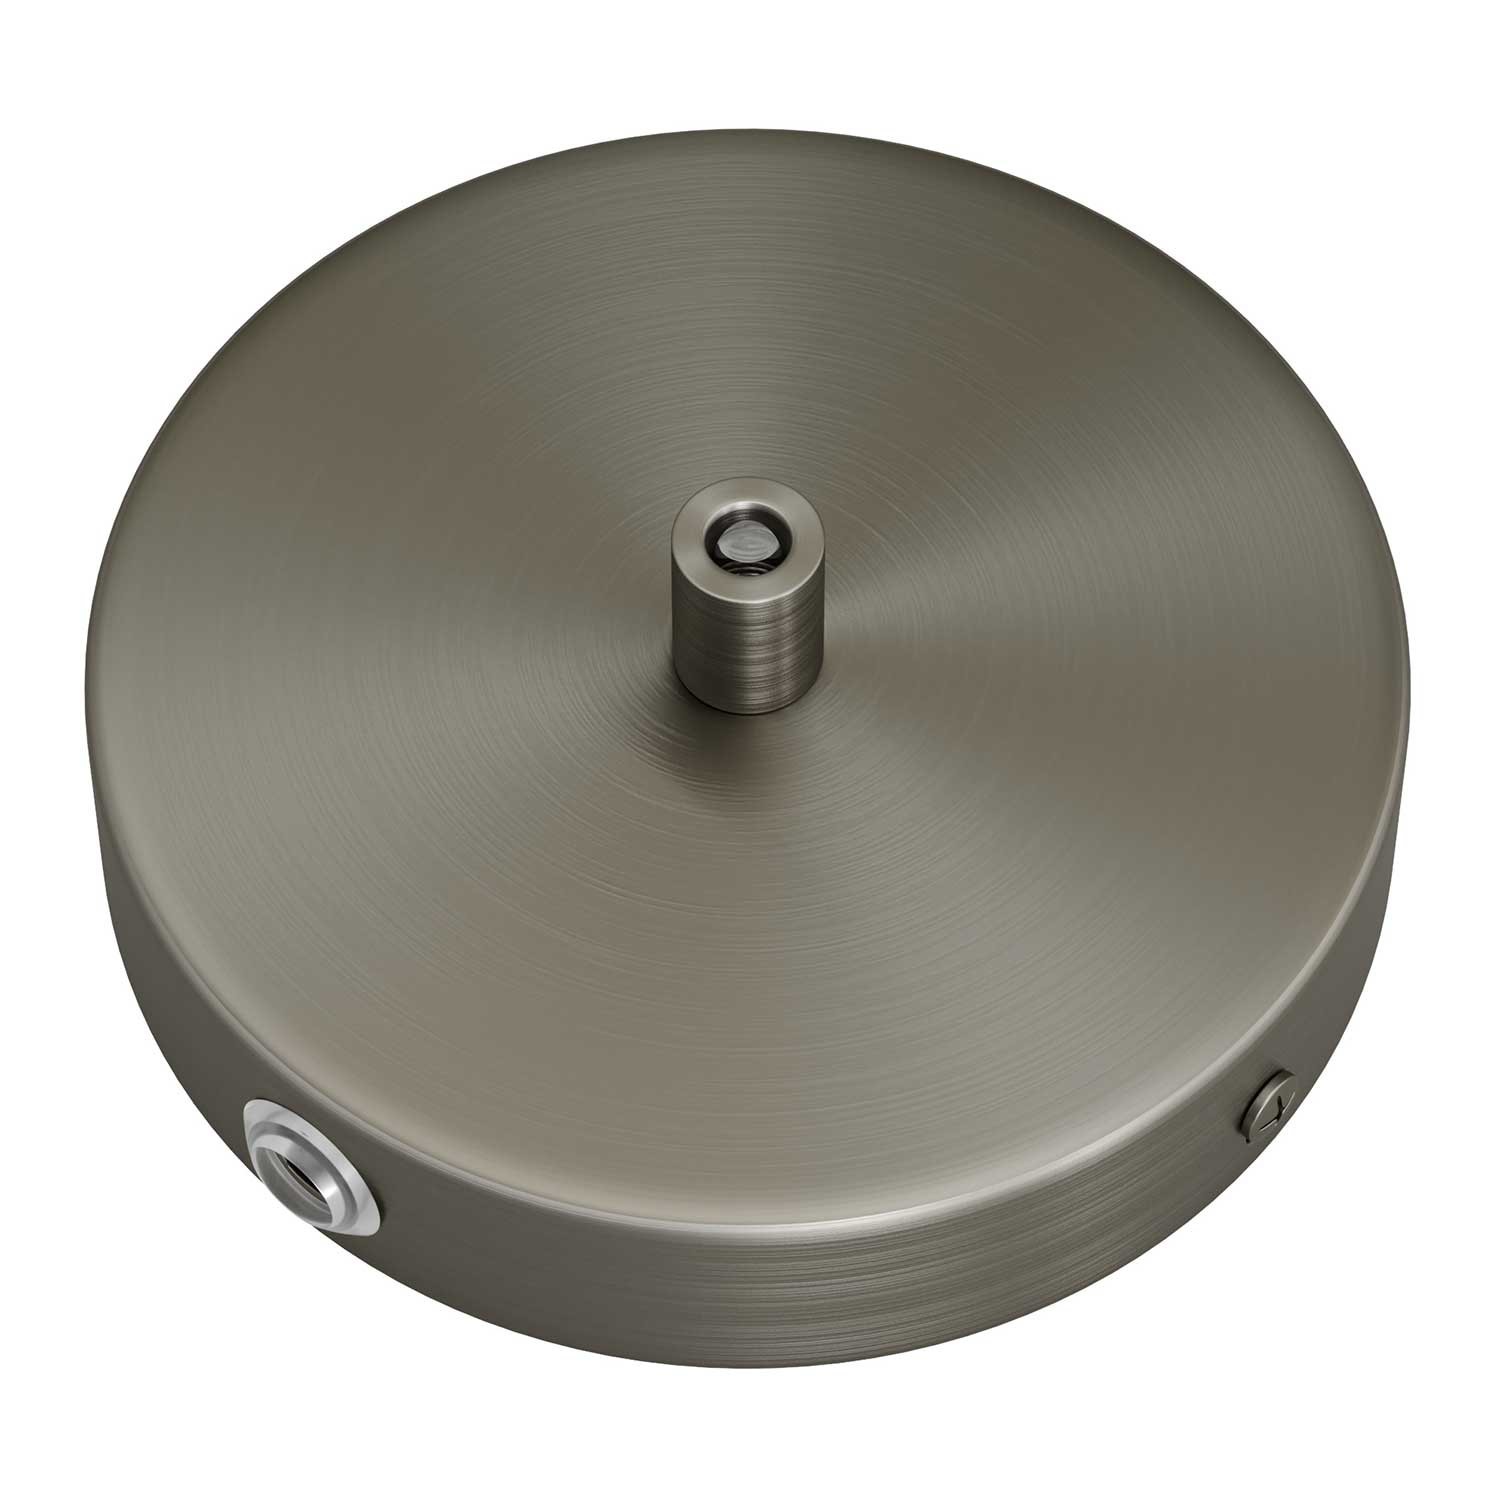 Smart metalen cilindrische rozetkit met een middengat en twee zijgaten - compatibel met Voice Assistants